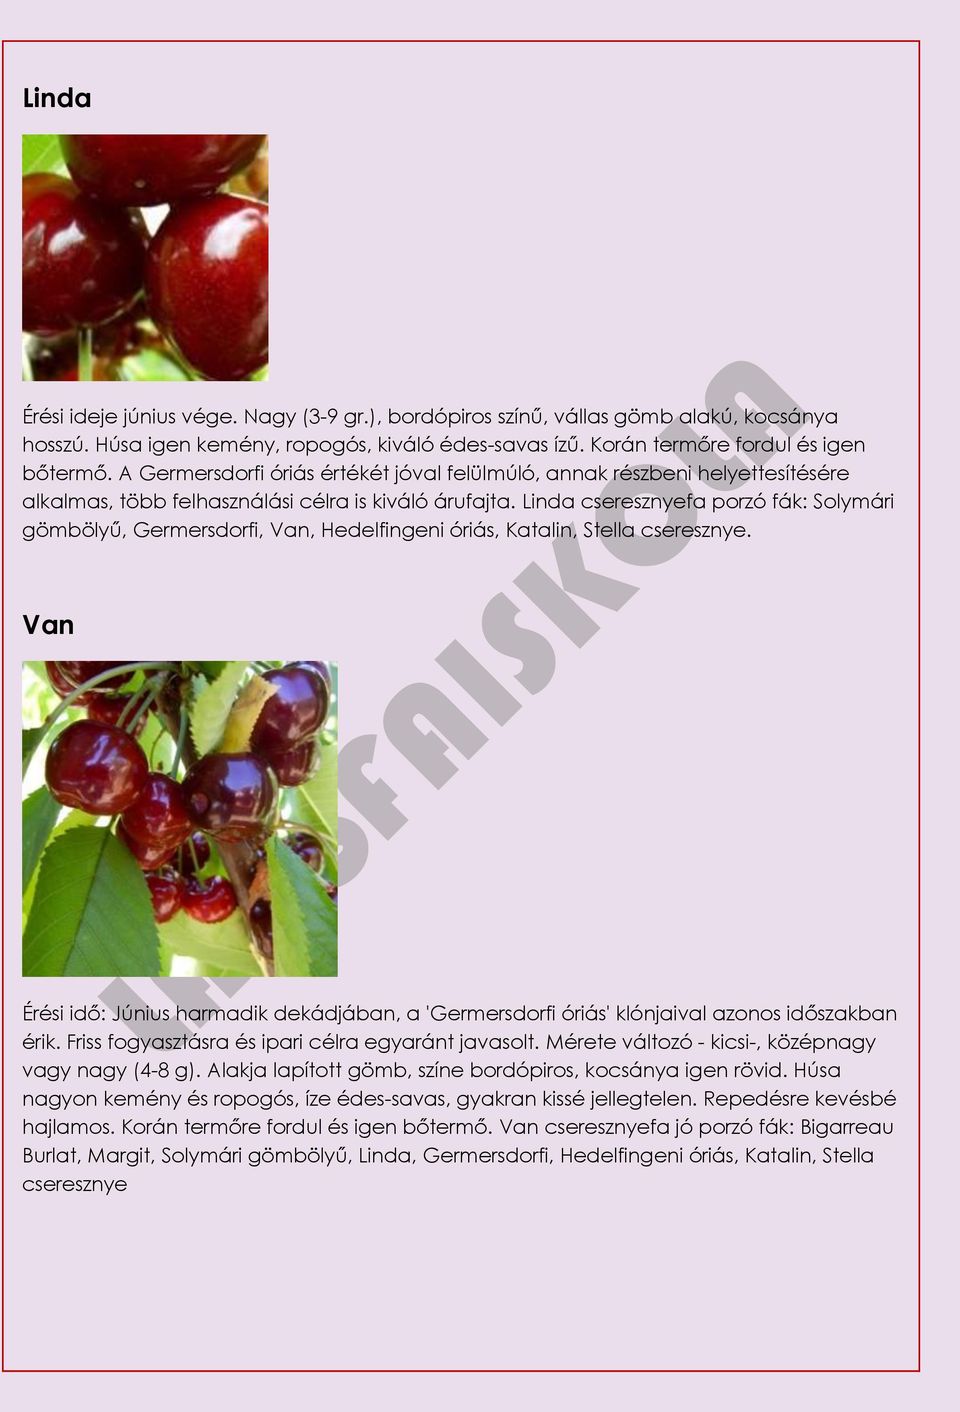 Linda cseresznyefa porzó fák: Solymári gömbölyű, Germersdorfi, Van, Hedelfingeni óriás, Katalin, Stella cseresznye.